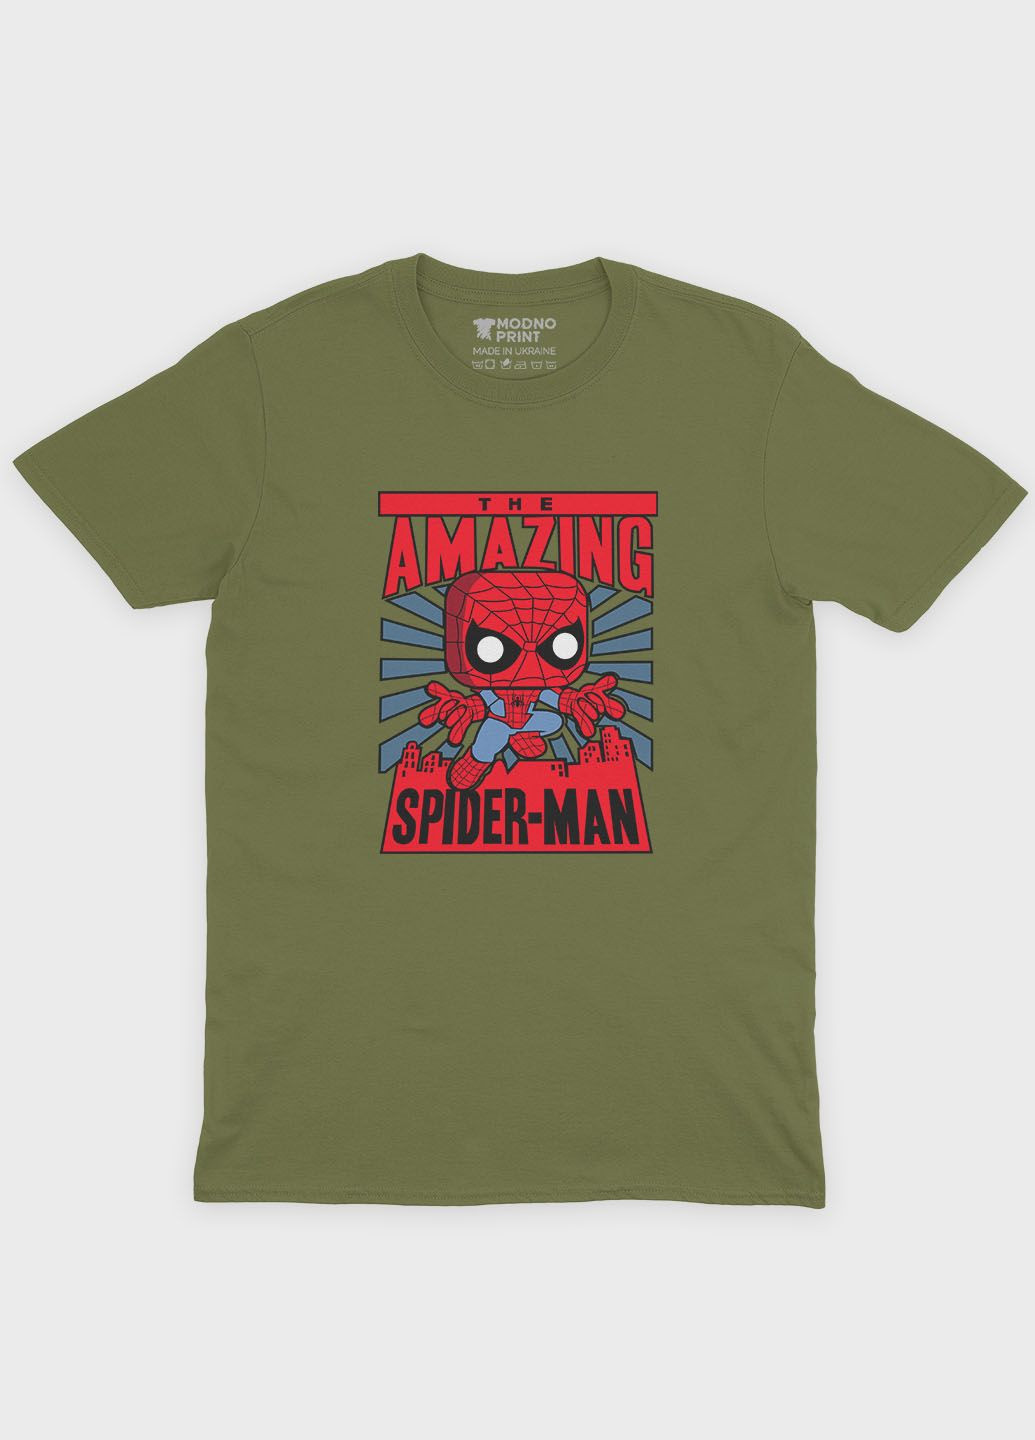 Хаки (оливковая) летняя мужская футболка с принтом супергероя - человек-паук (ts001-1-hgr-006-014-026-f) Modno